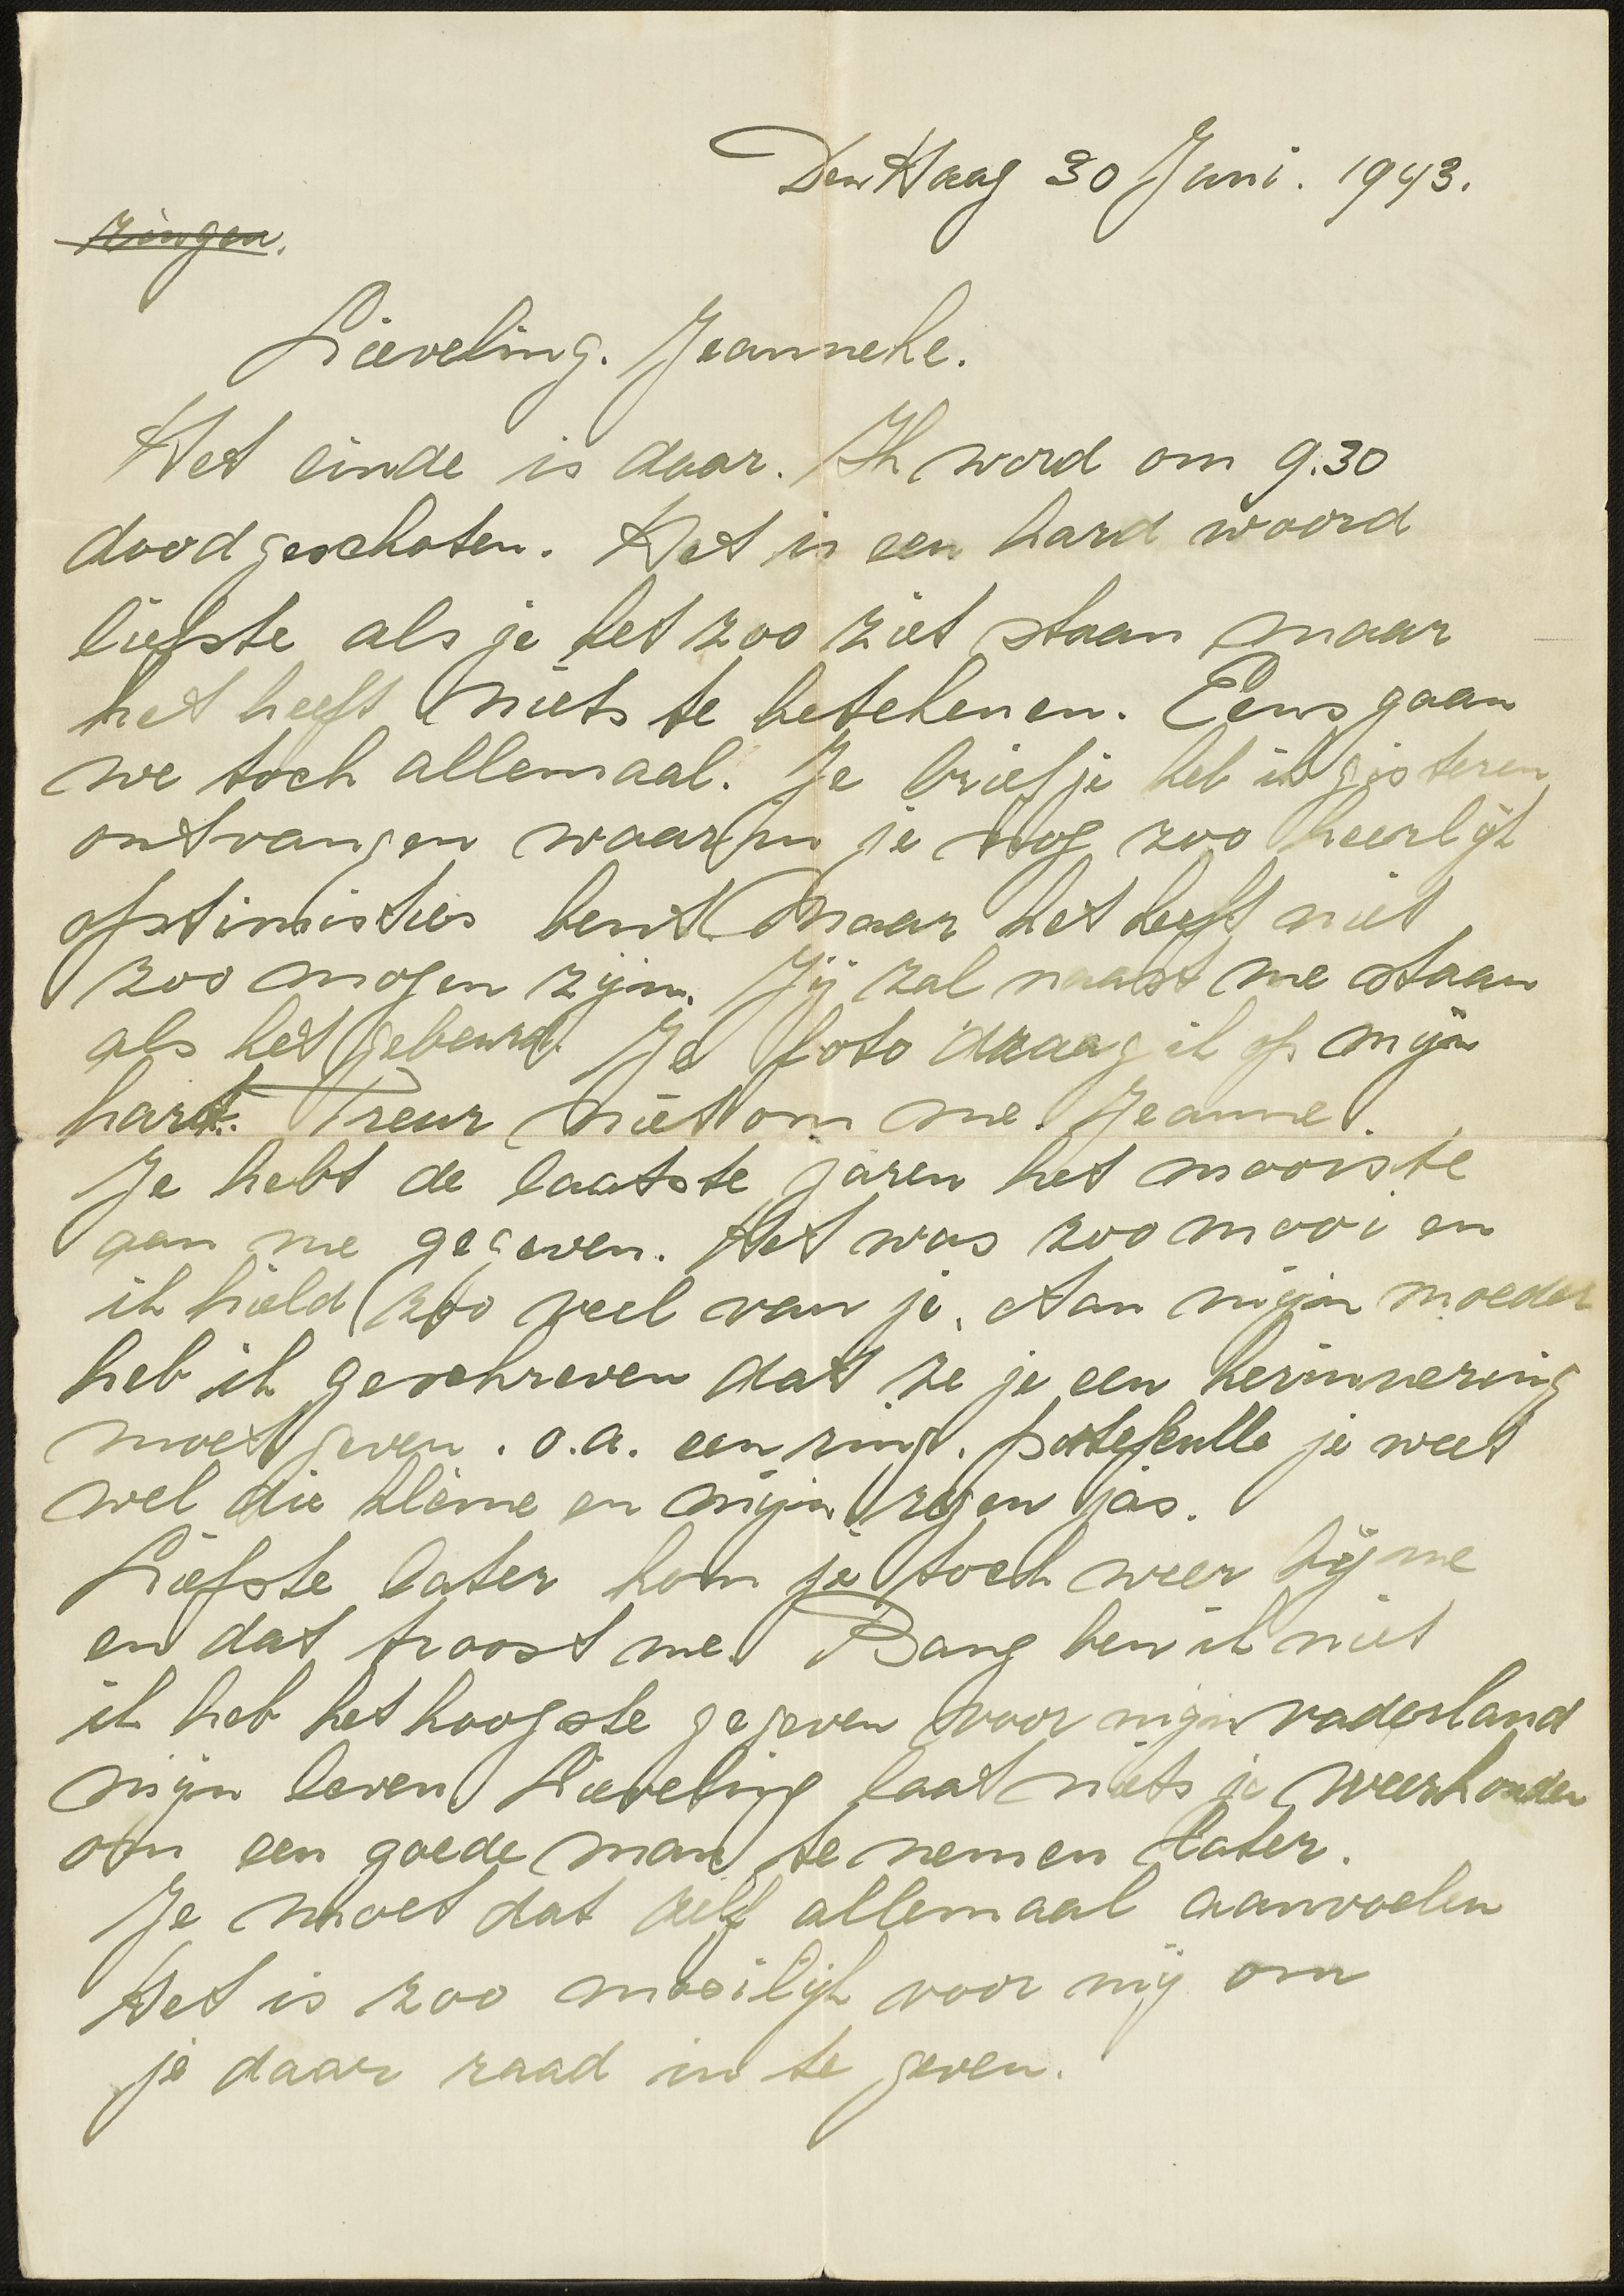 Afscheidsbrief van Henny Middendorp aan Jeanneke vanuit het Oranjehotel, 30 juni 1943.